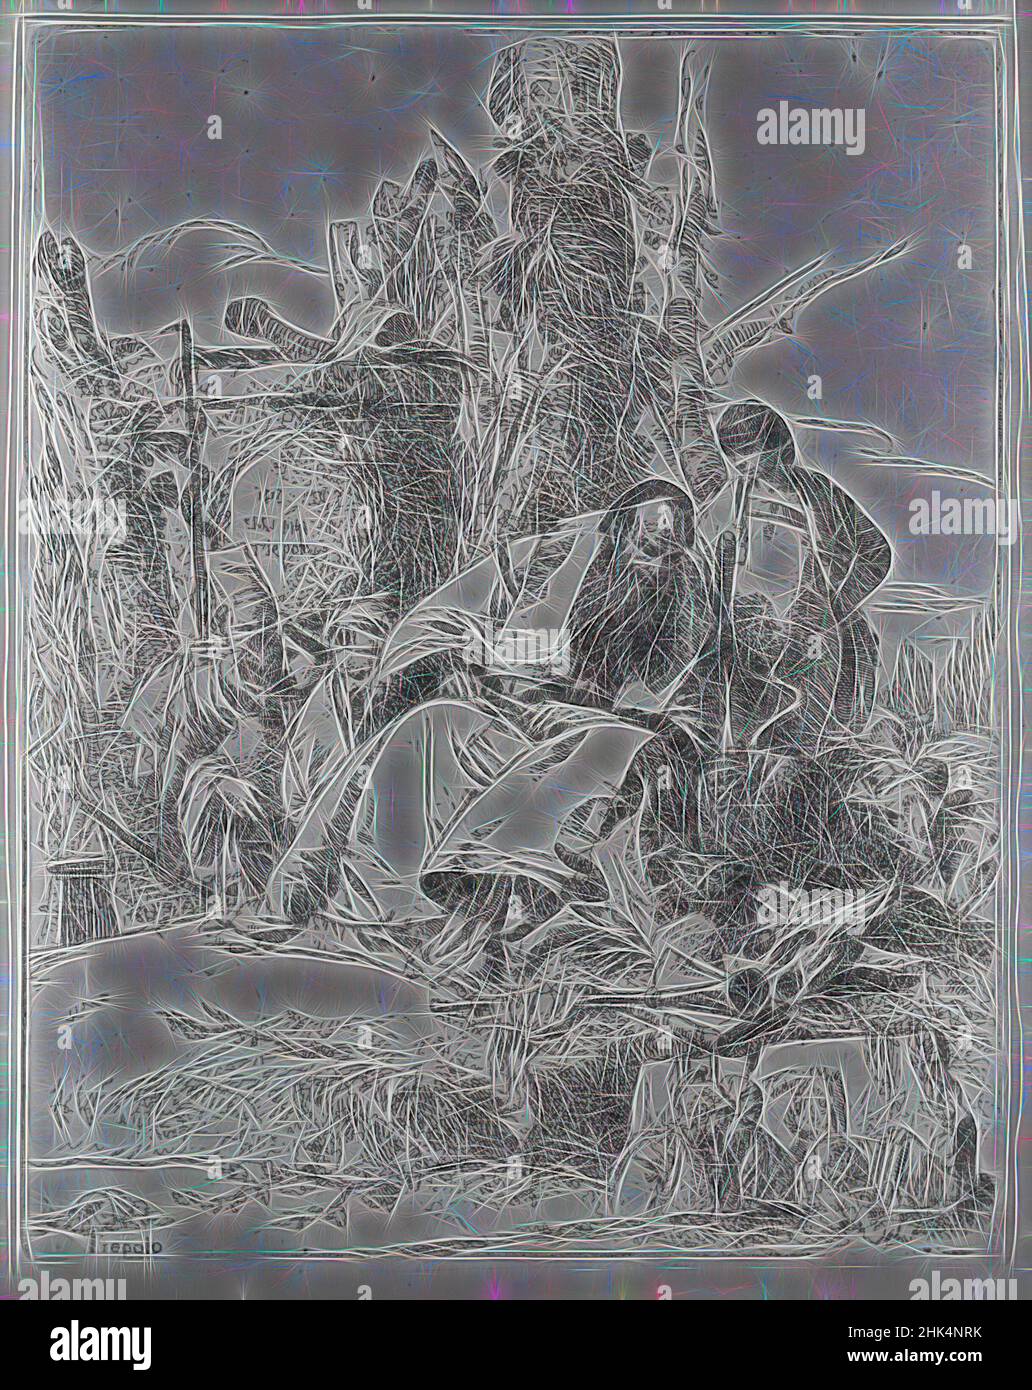 Inspiré par Magicien assis et l'observation des crânes, de la série: 'Scherzi di Fantasia', Giovanni Battista Tiepolo, Italien, Venetian, 1696-1770, Etching sur papier blanc, 8 7/8 x 7 po, 22,5 x 17,8 cm, apprenti, os, macabre, necromancer, Necromancy, sorts, sorcier, réimaginé par Artotop. L'art classique réinventé avec une touche moderne. Conception de lumière chaleureuse et gaie, de luminosité et de rayonnement de lumière. La photographie s'inspire du surréalisme et du futurisme, embrassant l'énergie dynamique de la technologie moderne, du mouvement, de la vitesse et révolutionne la culture Banque D'Images